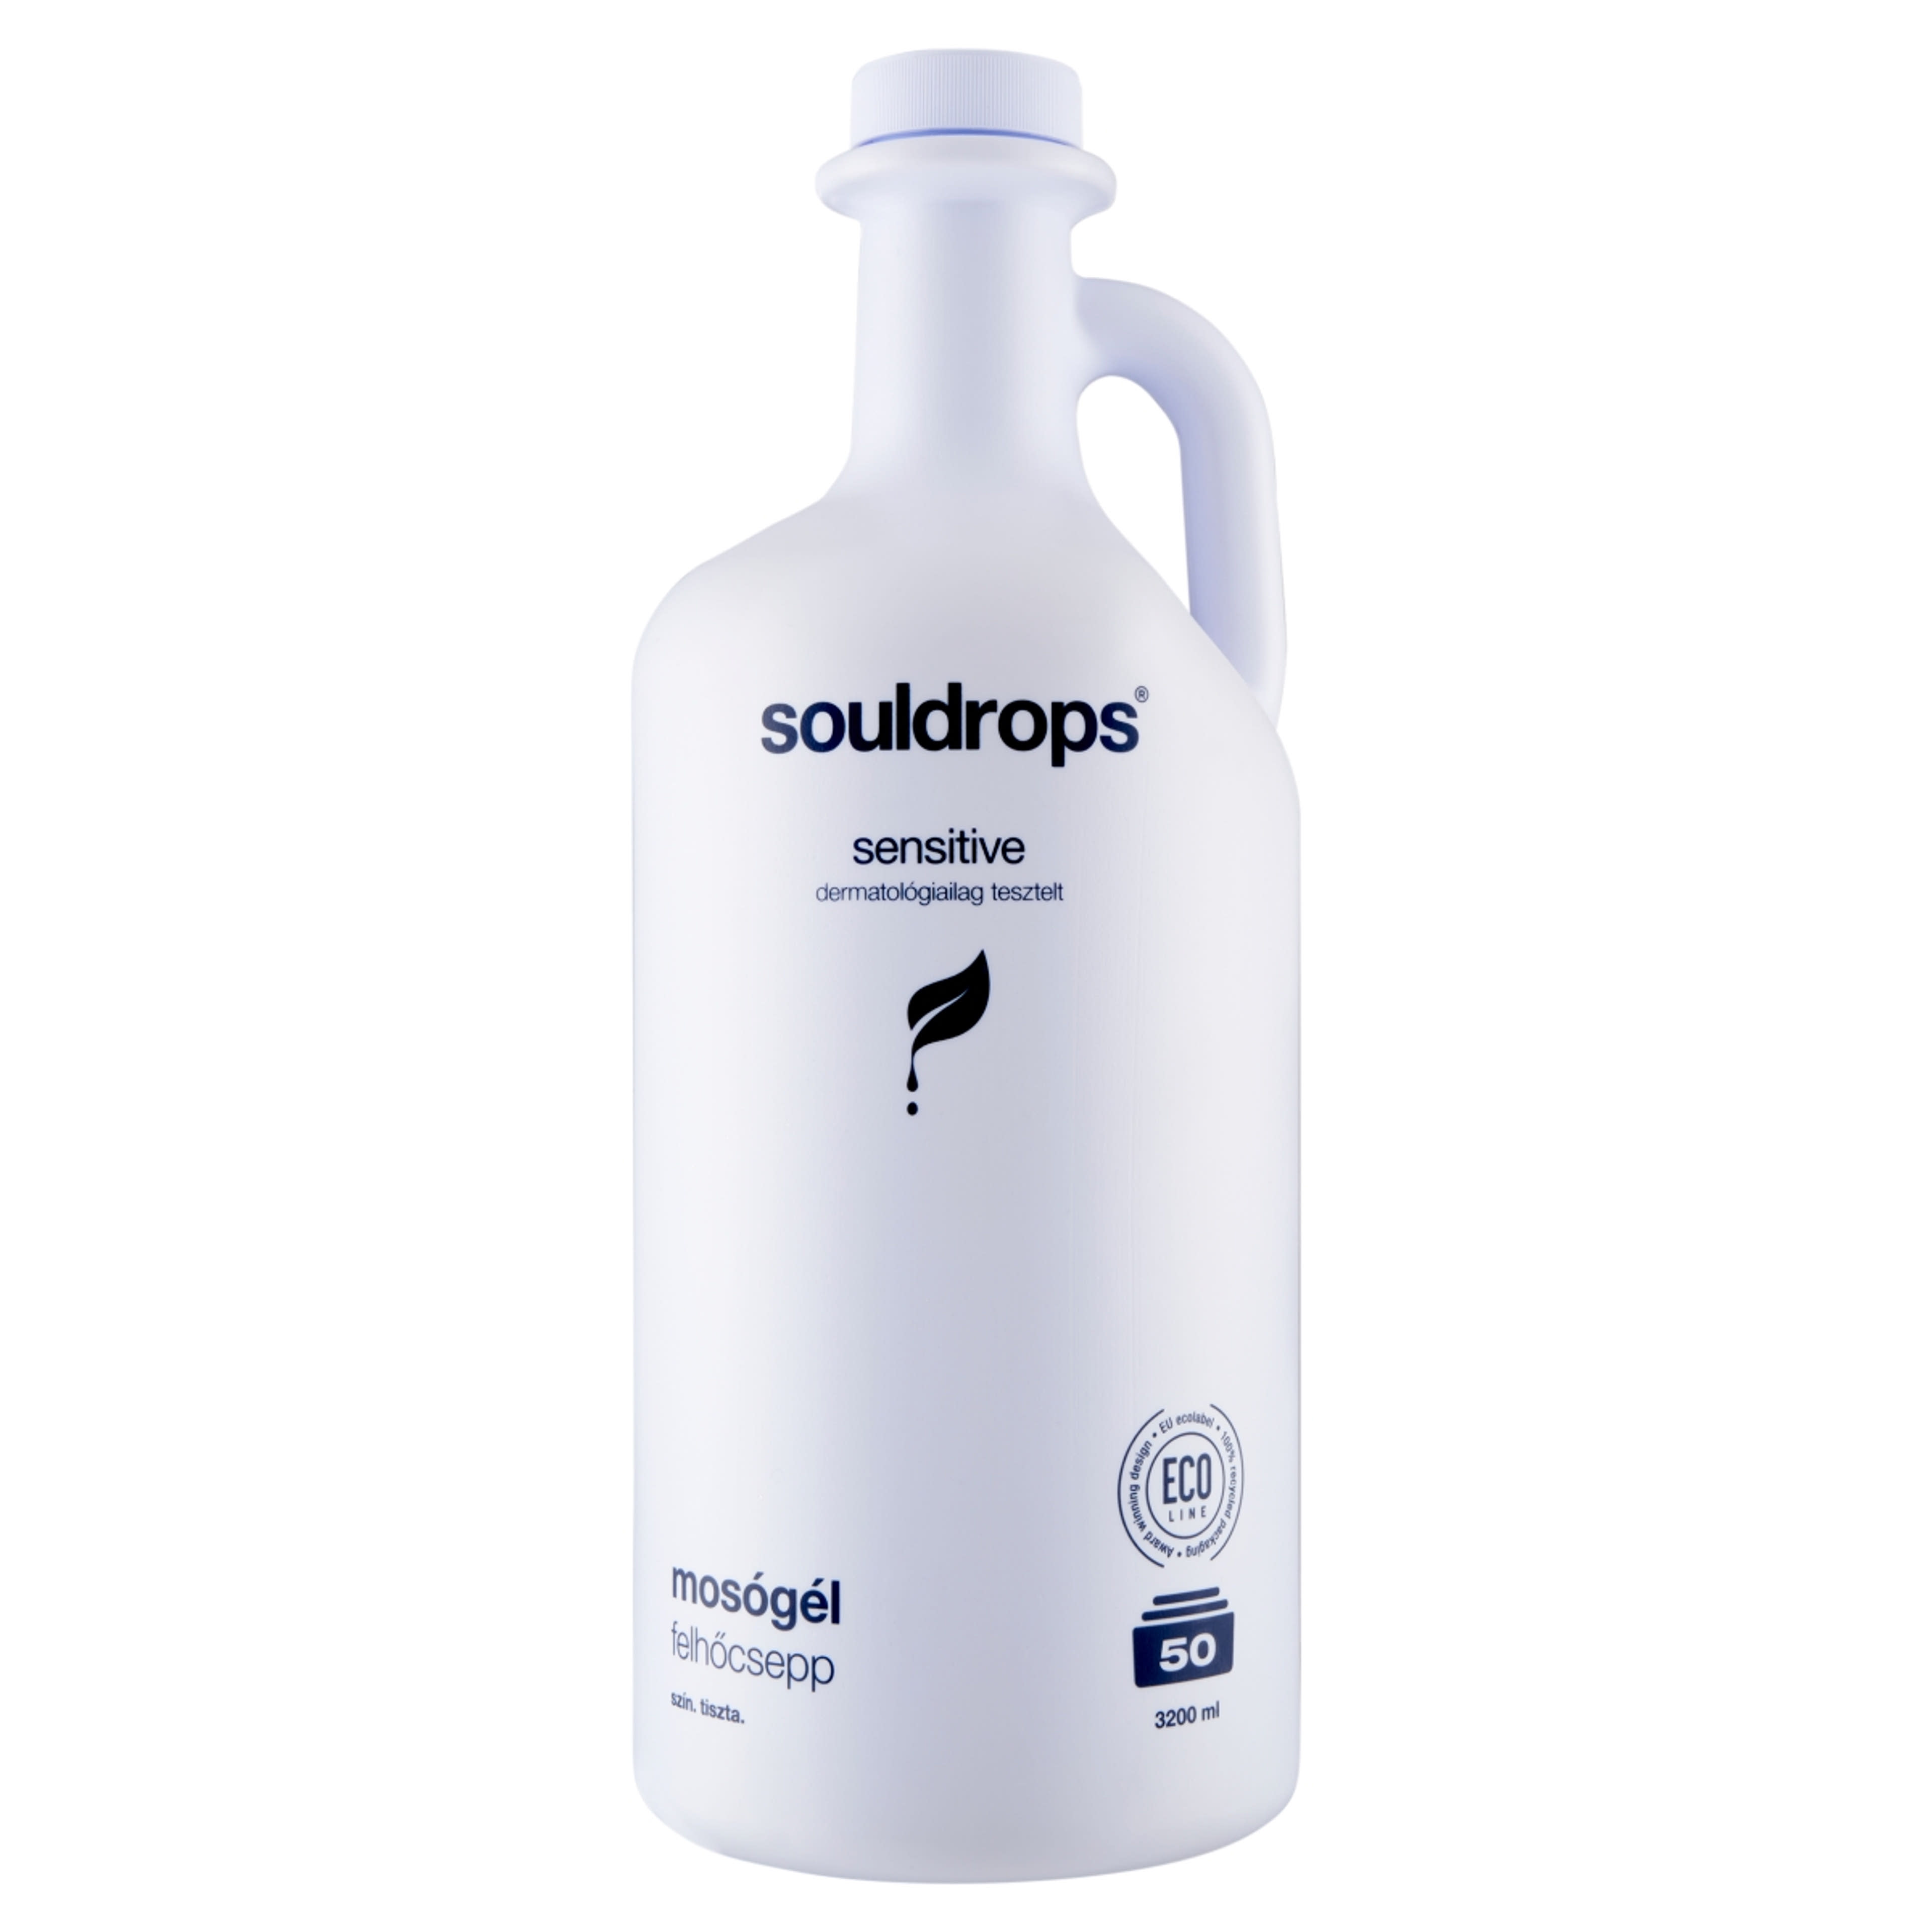 Souldrops Felhőcsepp szenzitív mosógél 50 mosás - 3200 ml-2